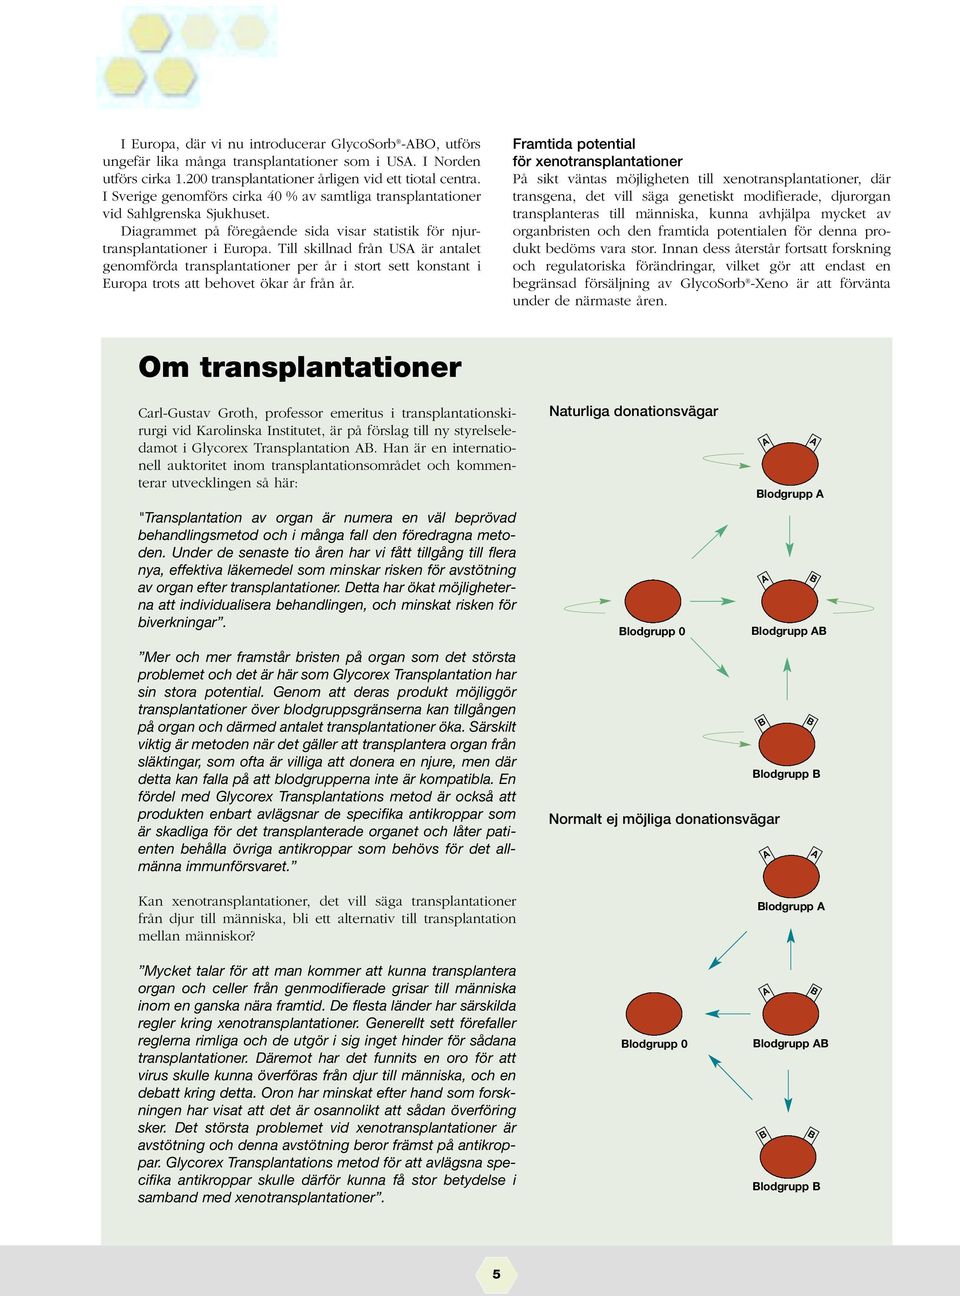 Till skillnad från USA är antalet genomförda transplantationer per år i stort sett konstant i Europa trots att behovet ökar år från år.